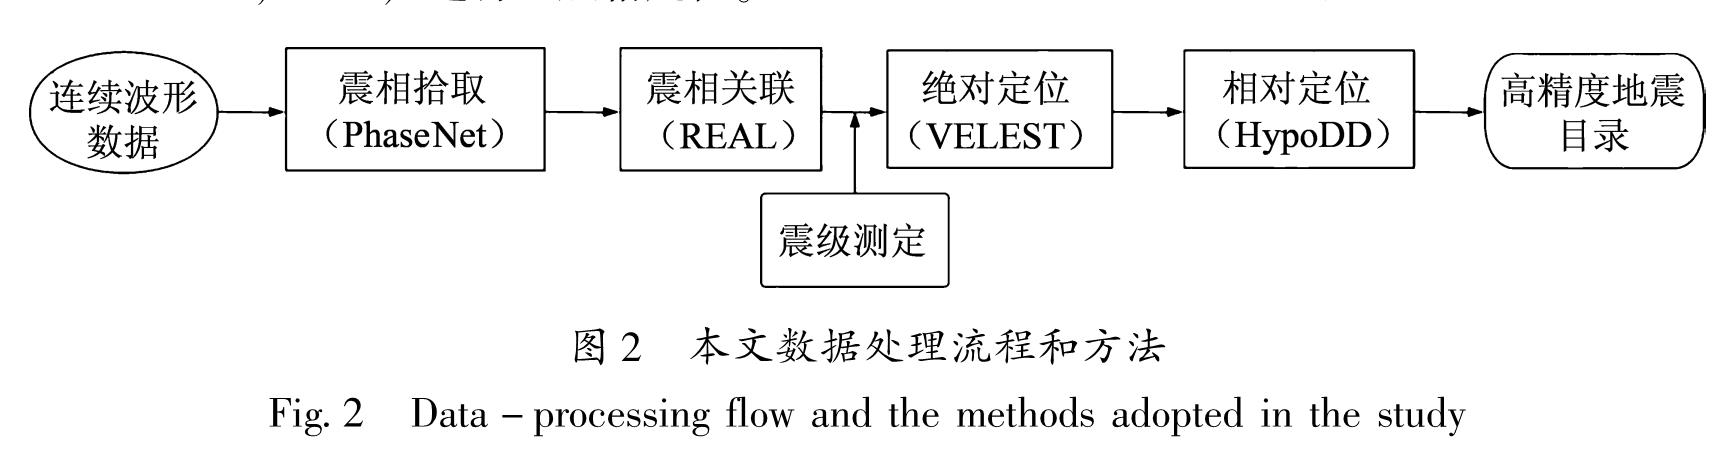 图2 本文数据处理流程和方法<br/>Fig.2 Data-processing flow and the methods adopted in the study